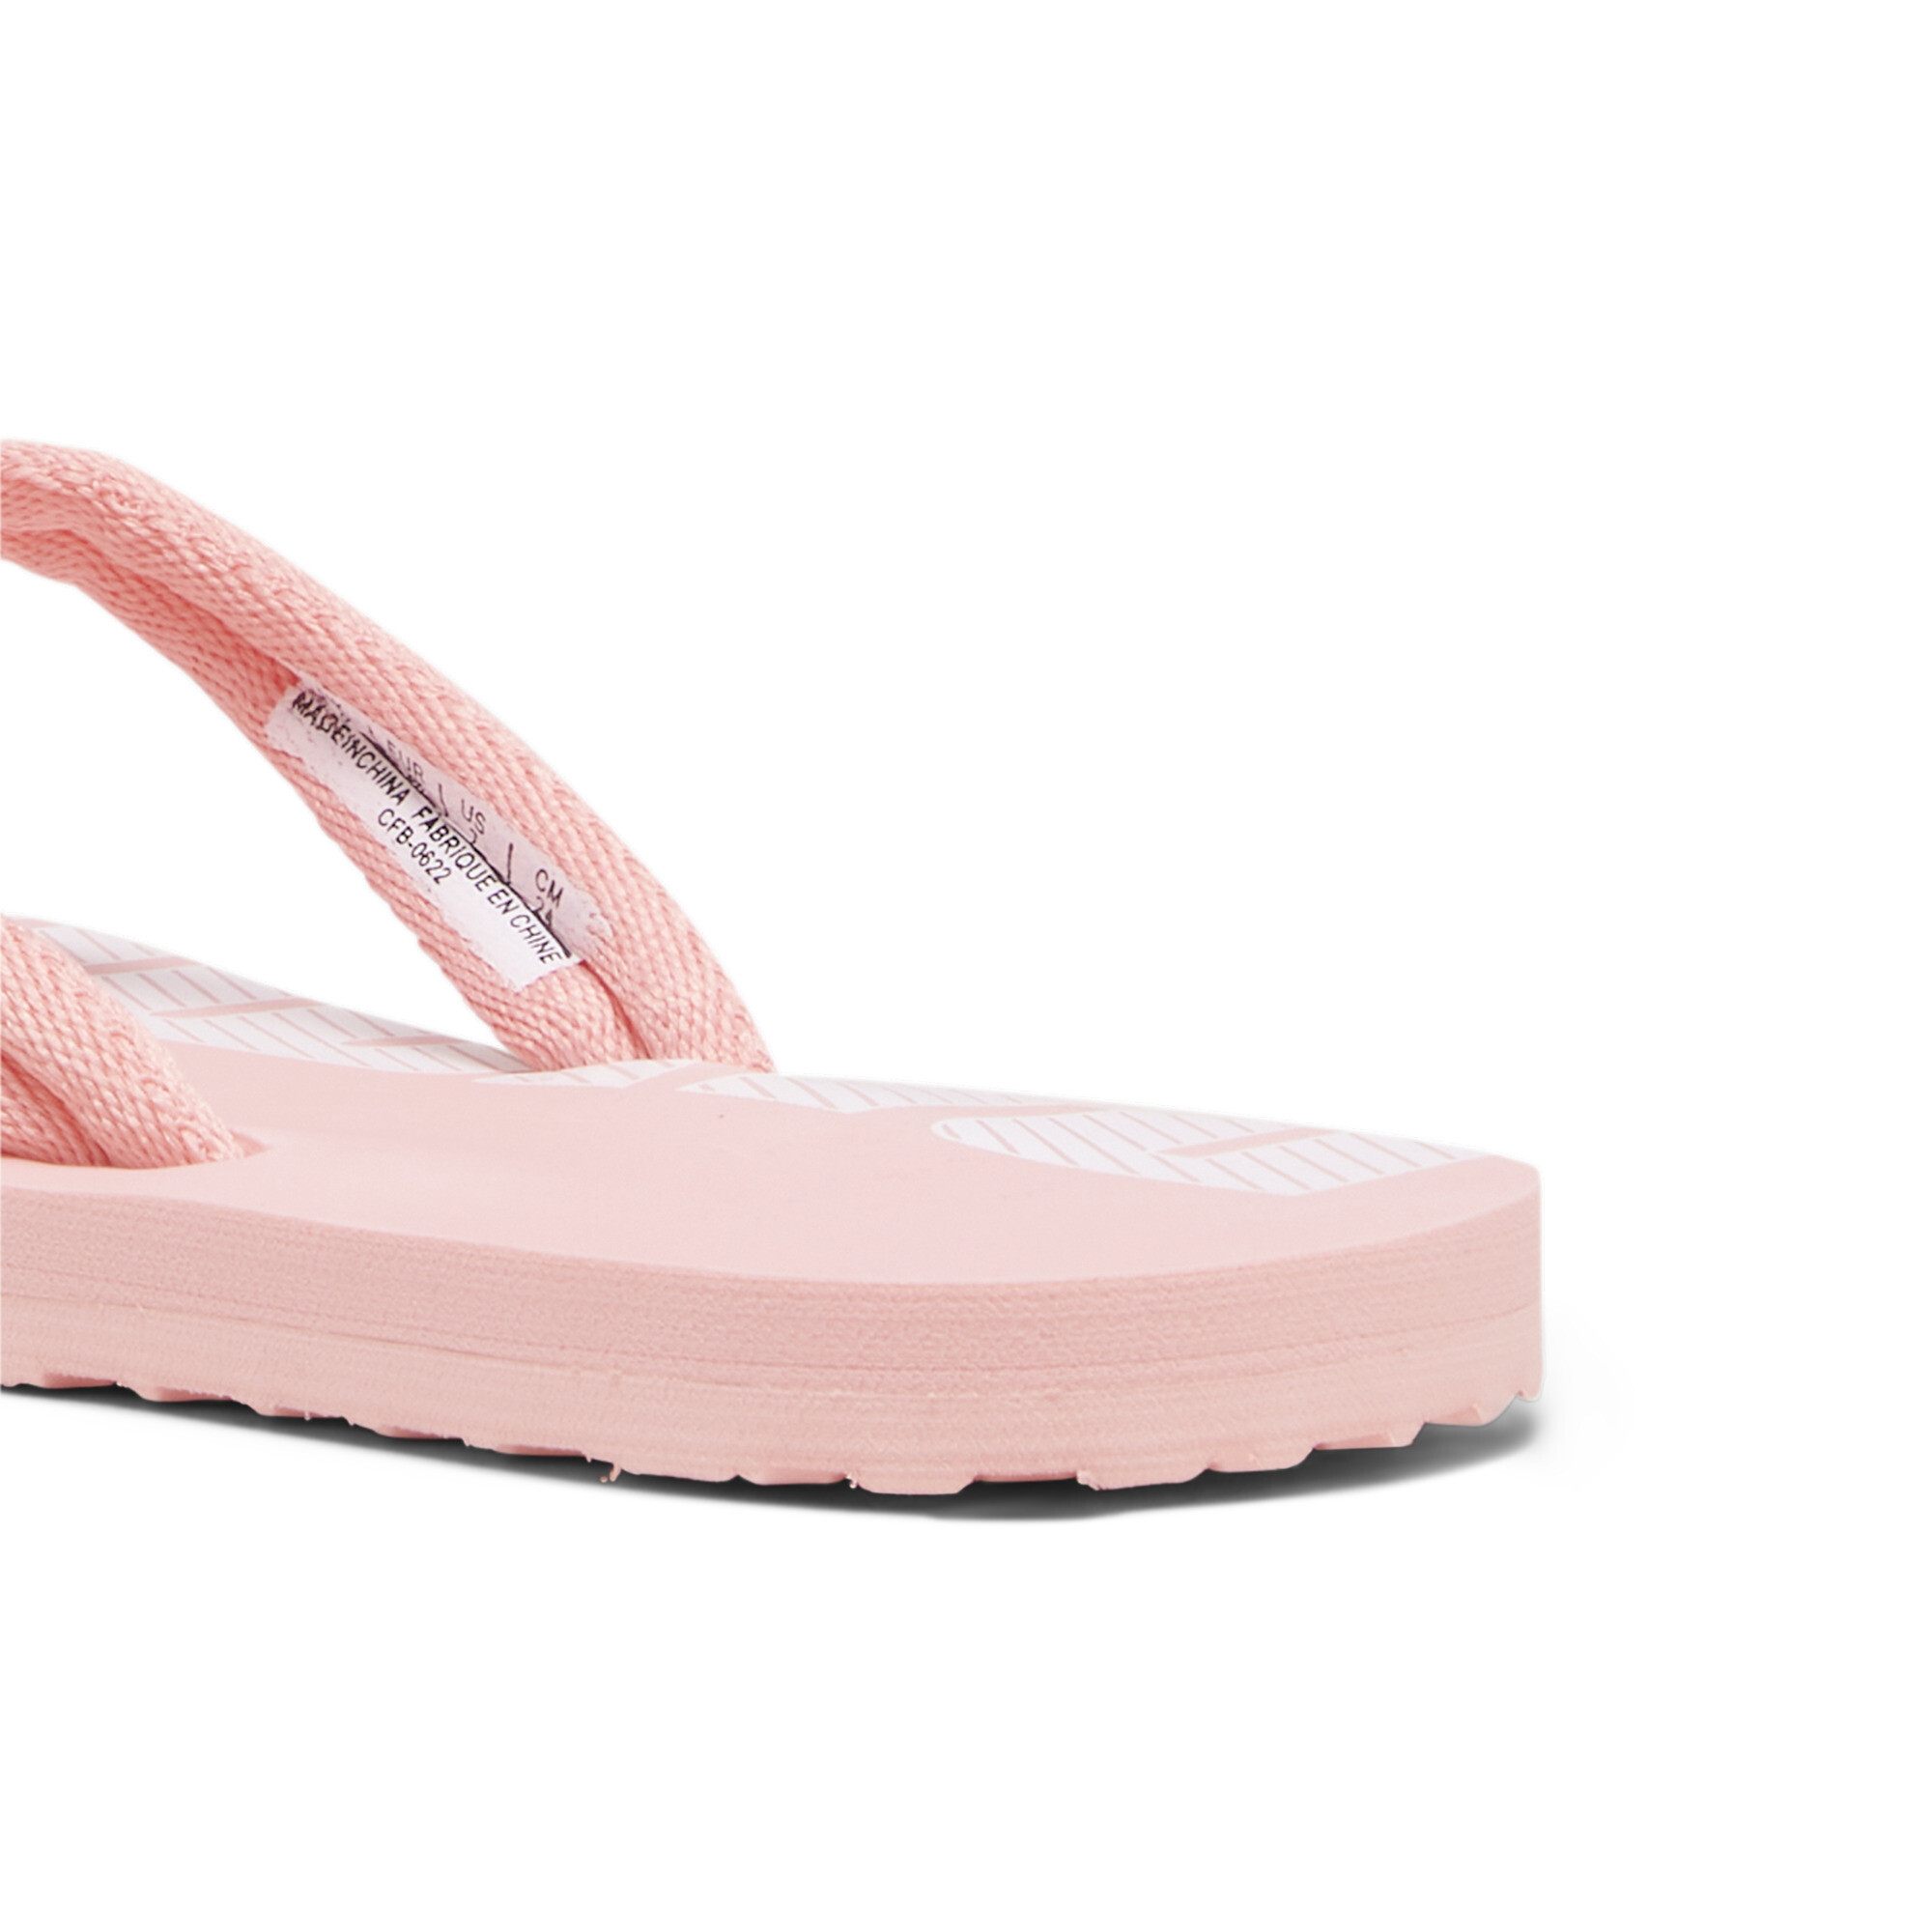 Men's PUMA Epic Flip V2 Sandals In Pink, Size EU 47